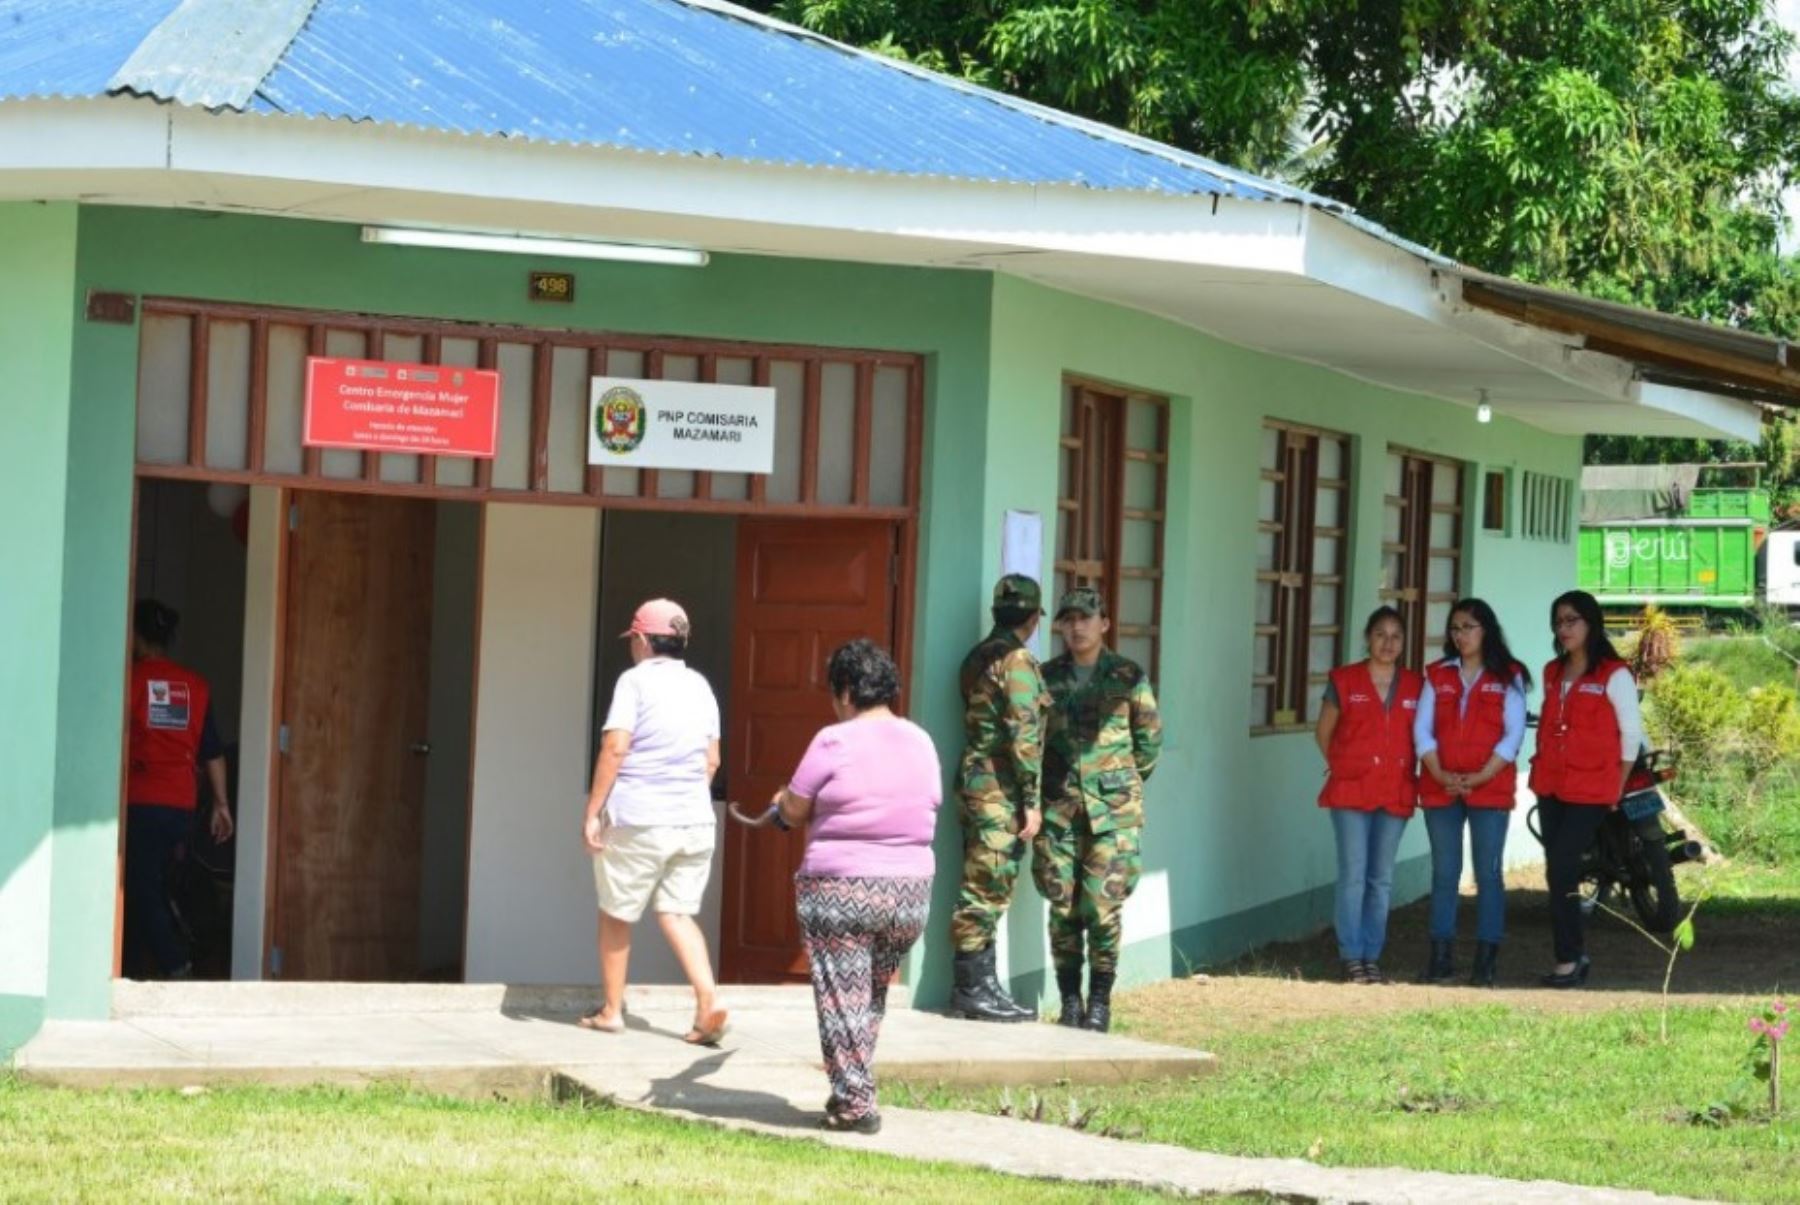 Ministerio de la Mujer brinda atención a familia de niña rescatada en Satipo y coordina acciones legales contra presuntos agresores.